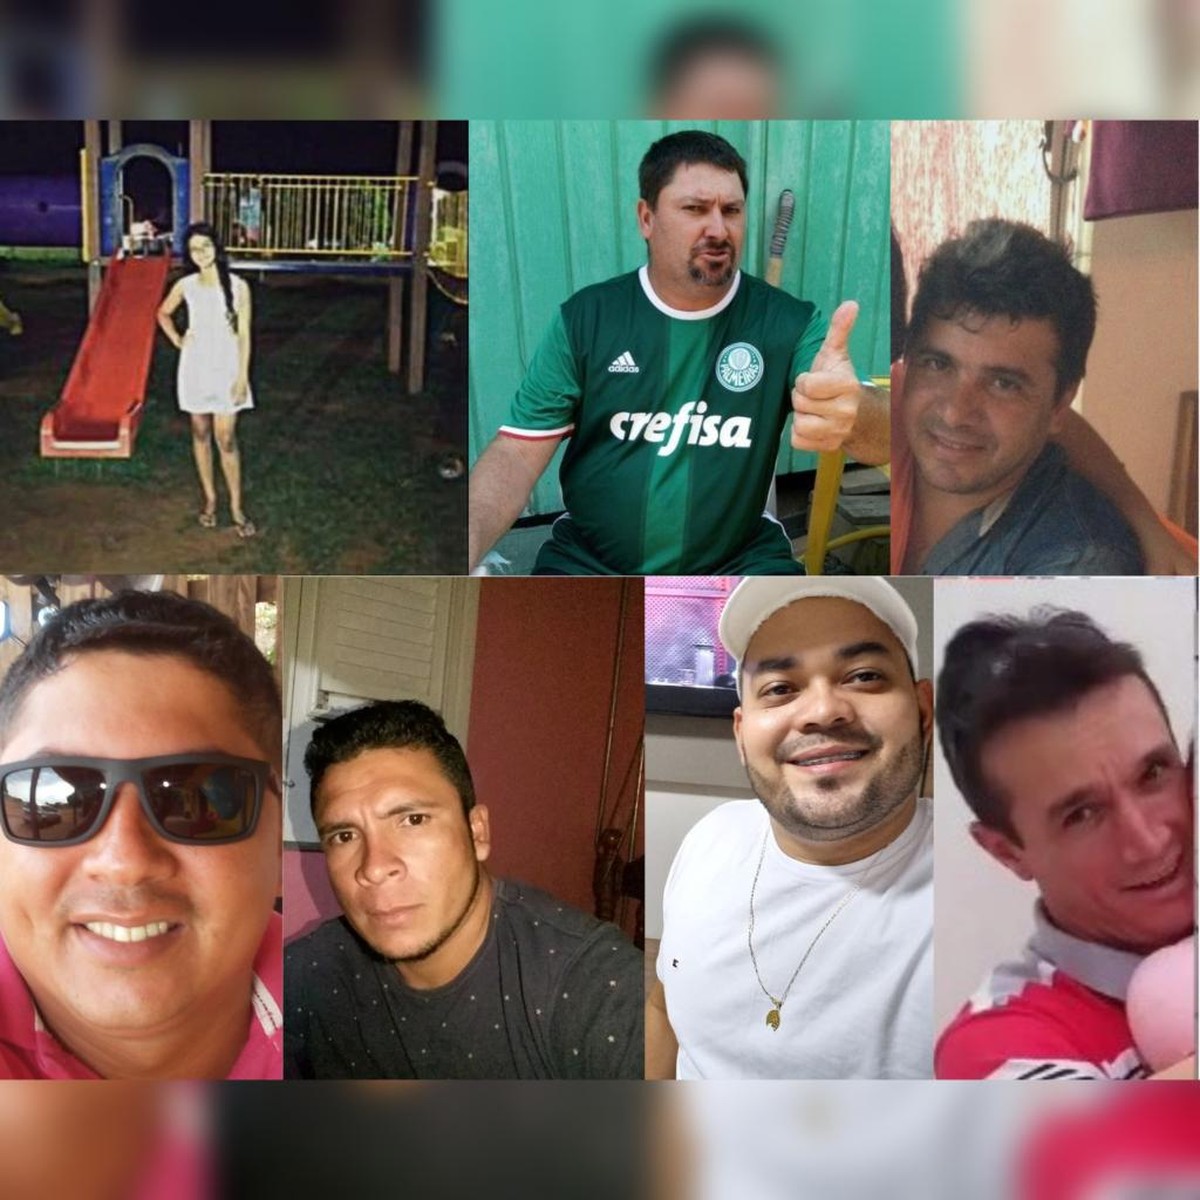 Polícia identifica e caça dupla que matou 7 pessoas após jogo de sinuca •  Jornal Diário do Pará